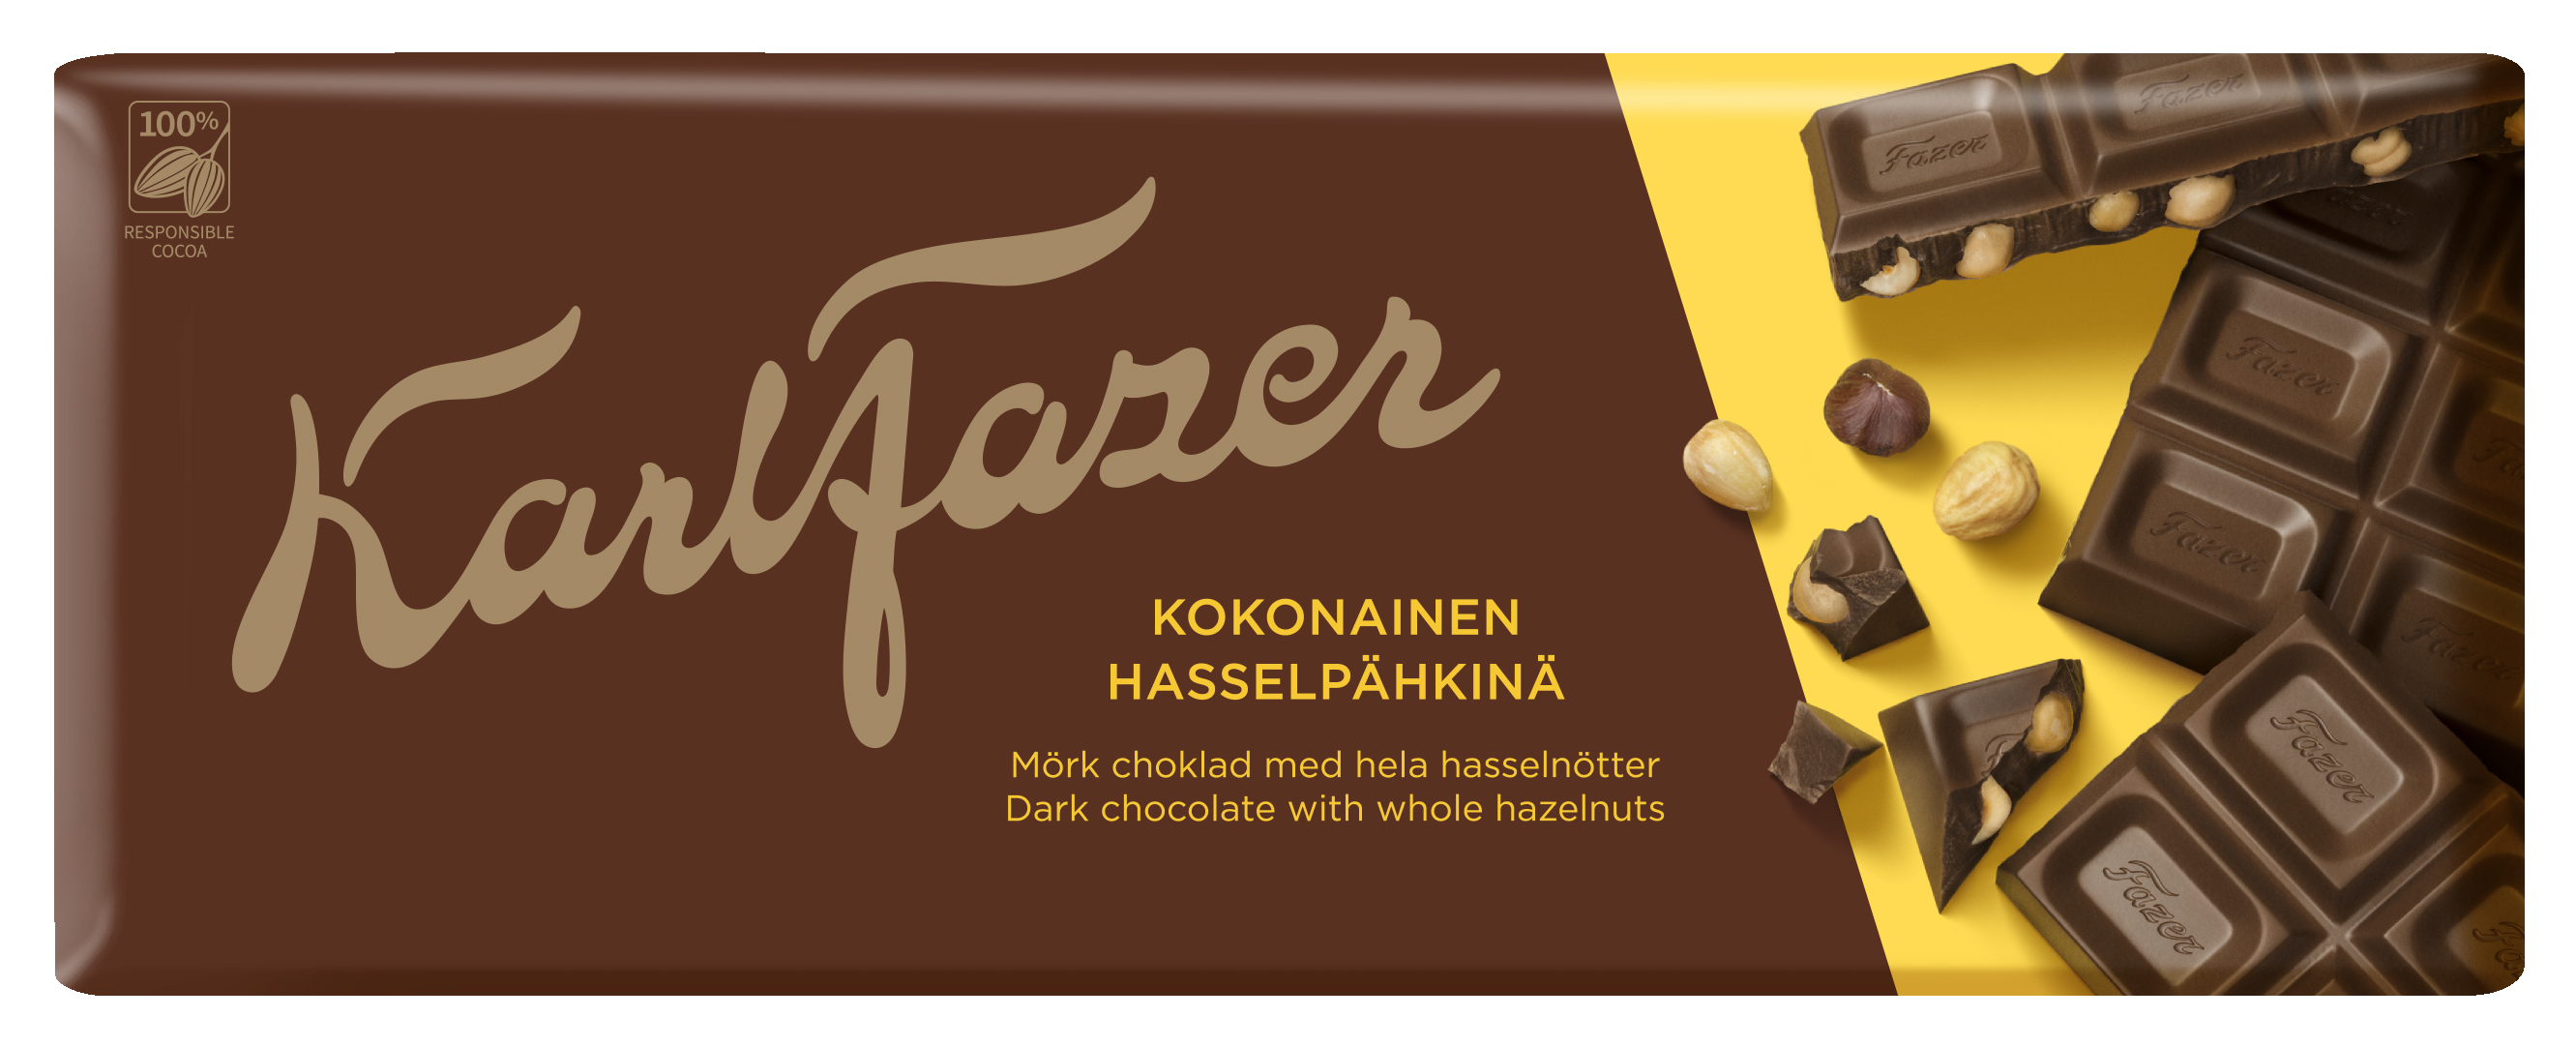 Karl Fazer 200g Tumma suklaa kokonaiset hasselpähkinät DIS